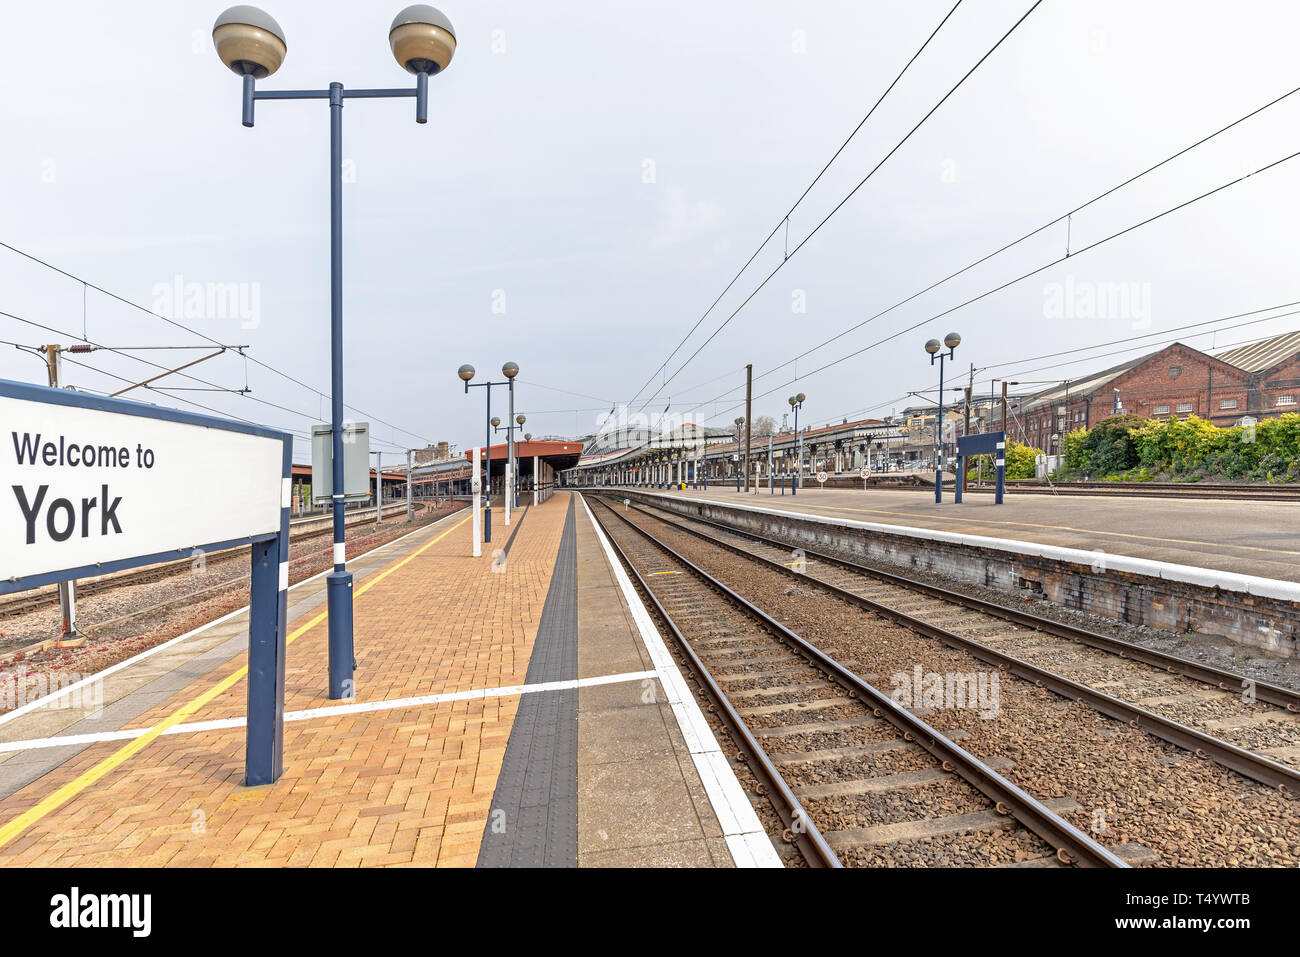 Der Bahnhof York mit Plattformen und Schienen, die nach innen. Eine Station Ort Zeichen im Vordergrund steht und ein blauer Himmel ist oben. Stockfoto